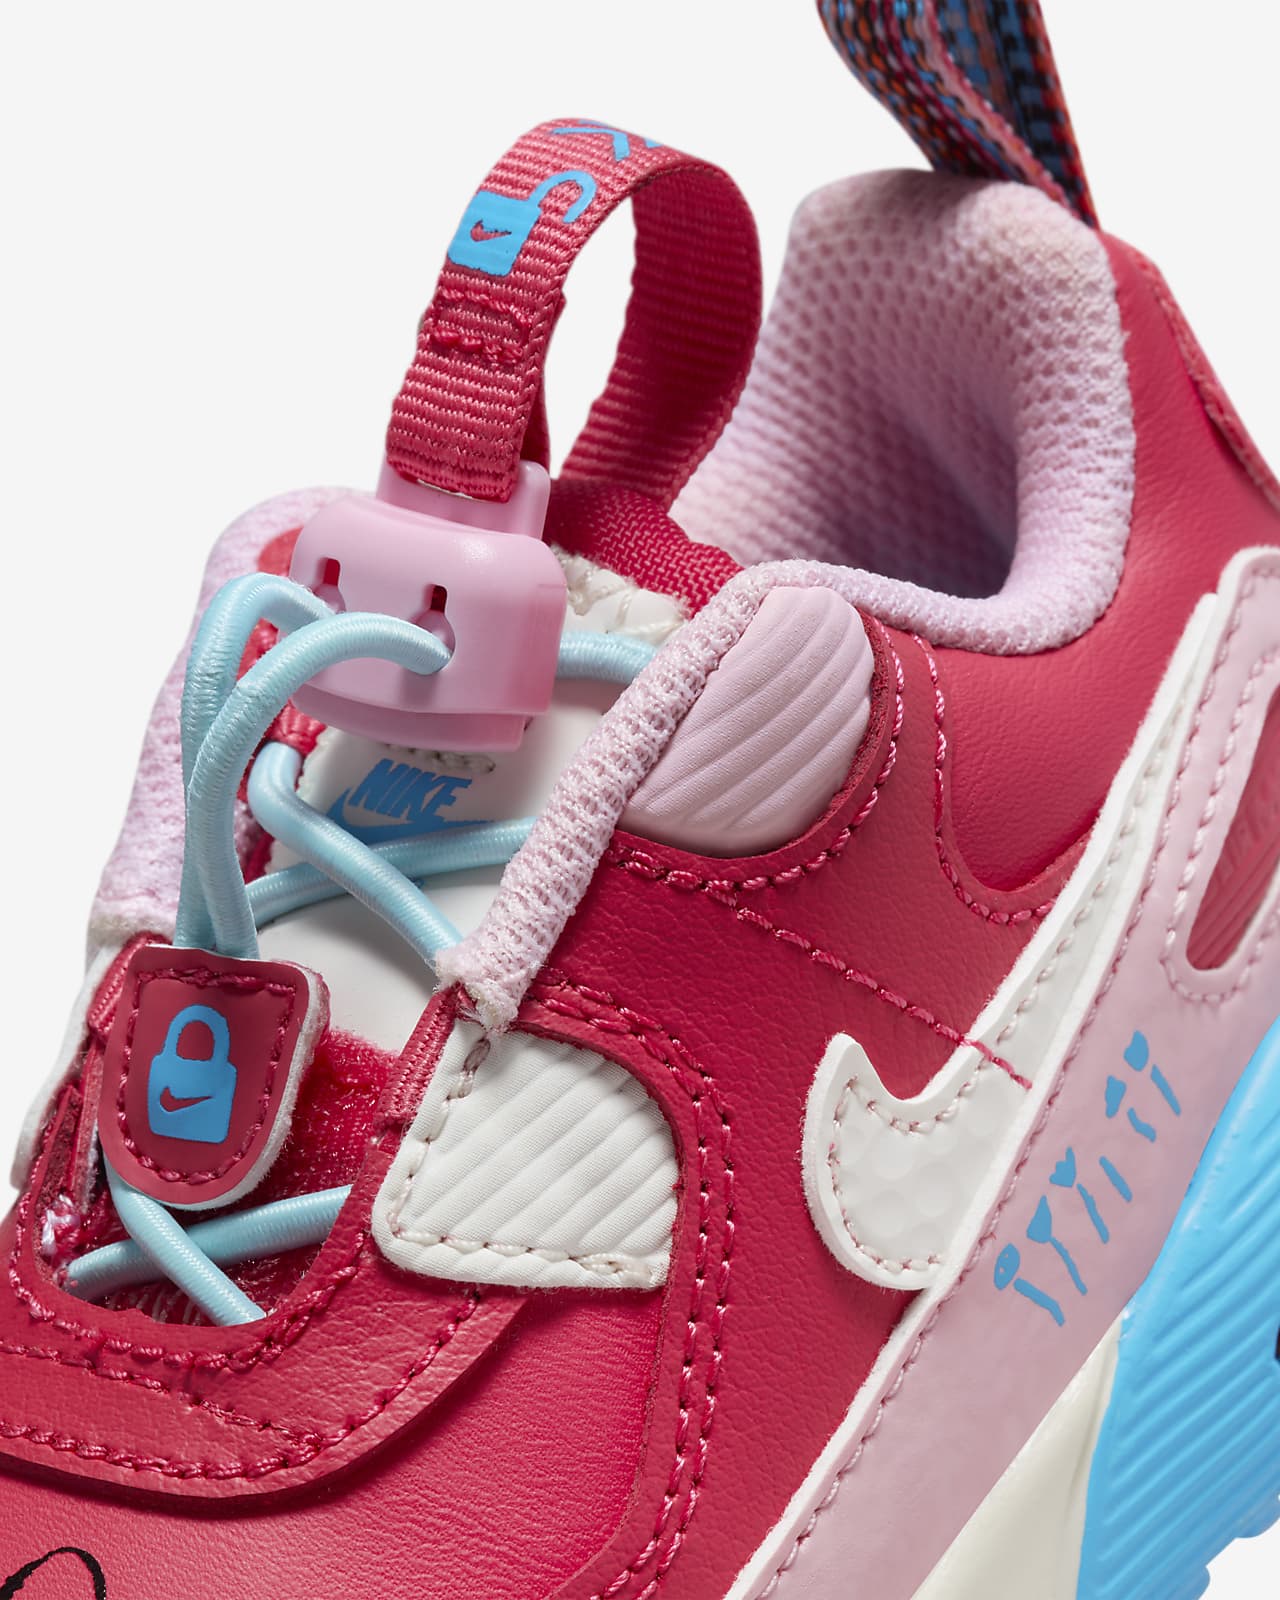 Praktisk Det beskydning Nike Air Max 90 Toggle-sko til babyer/mindre børn. Nike DK